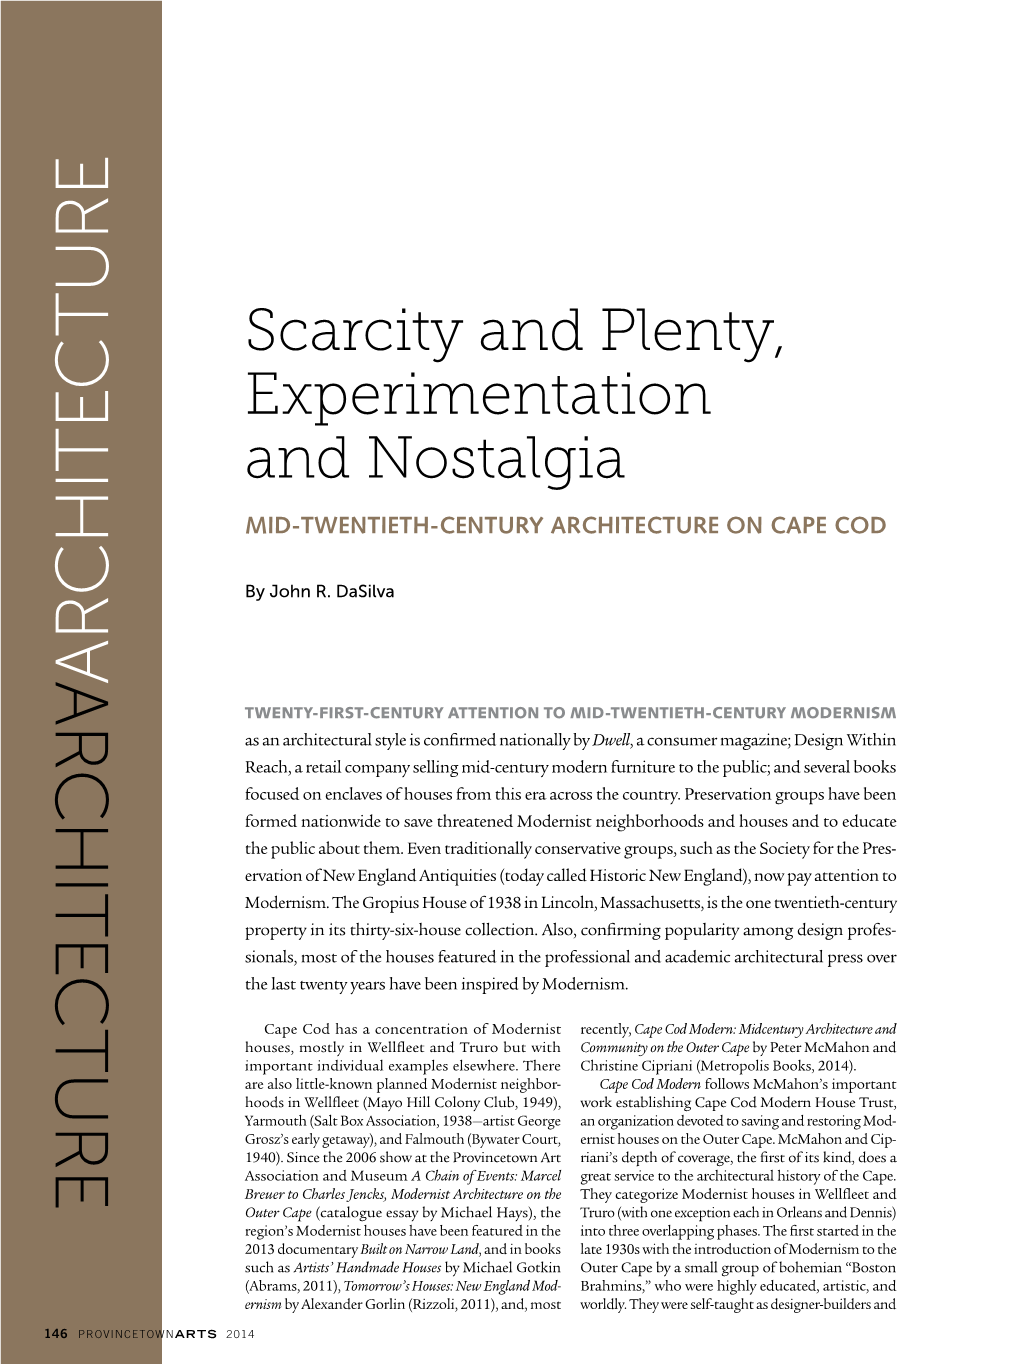 Scarcity and Plenty, Experimentation and Nostalgia